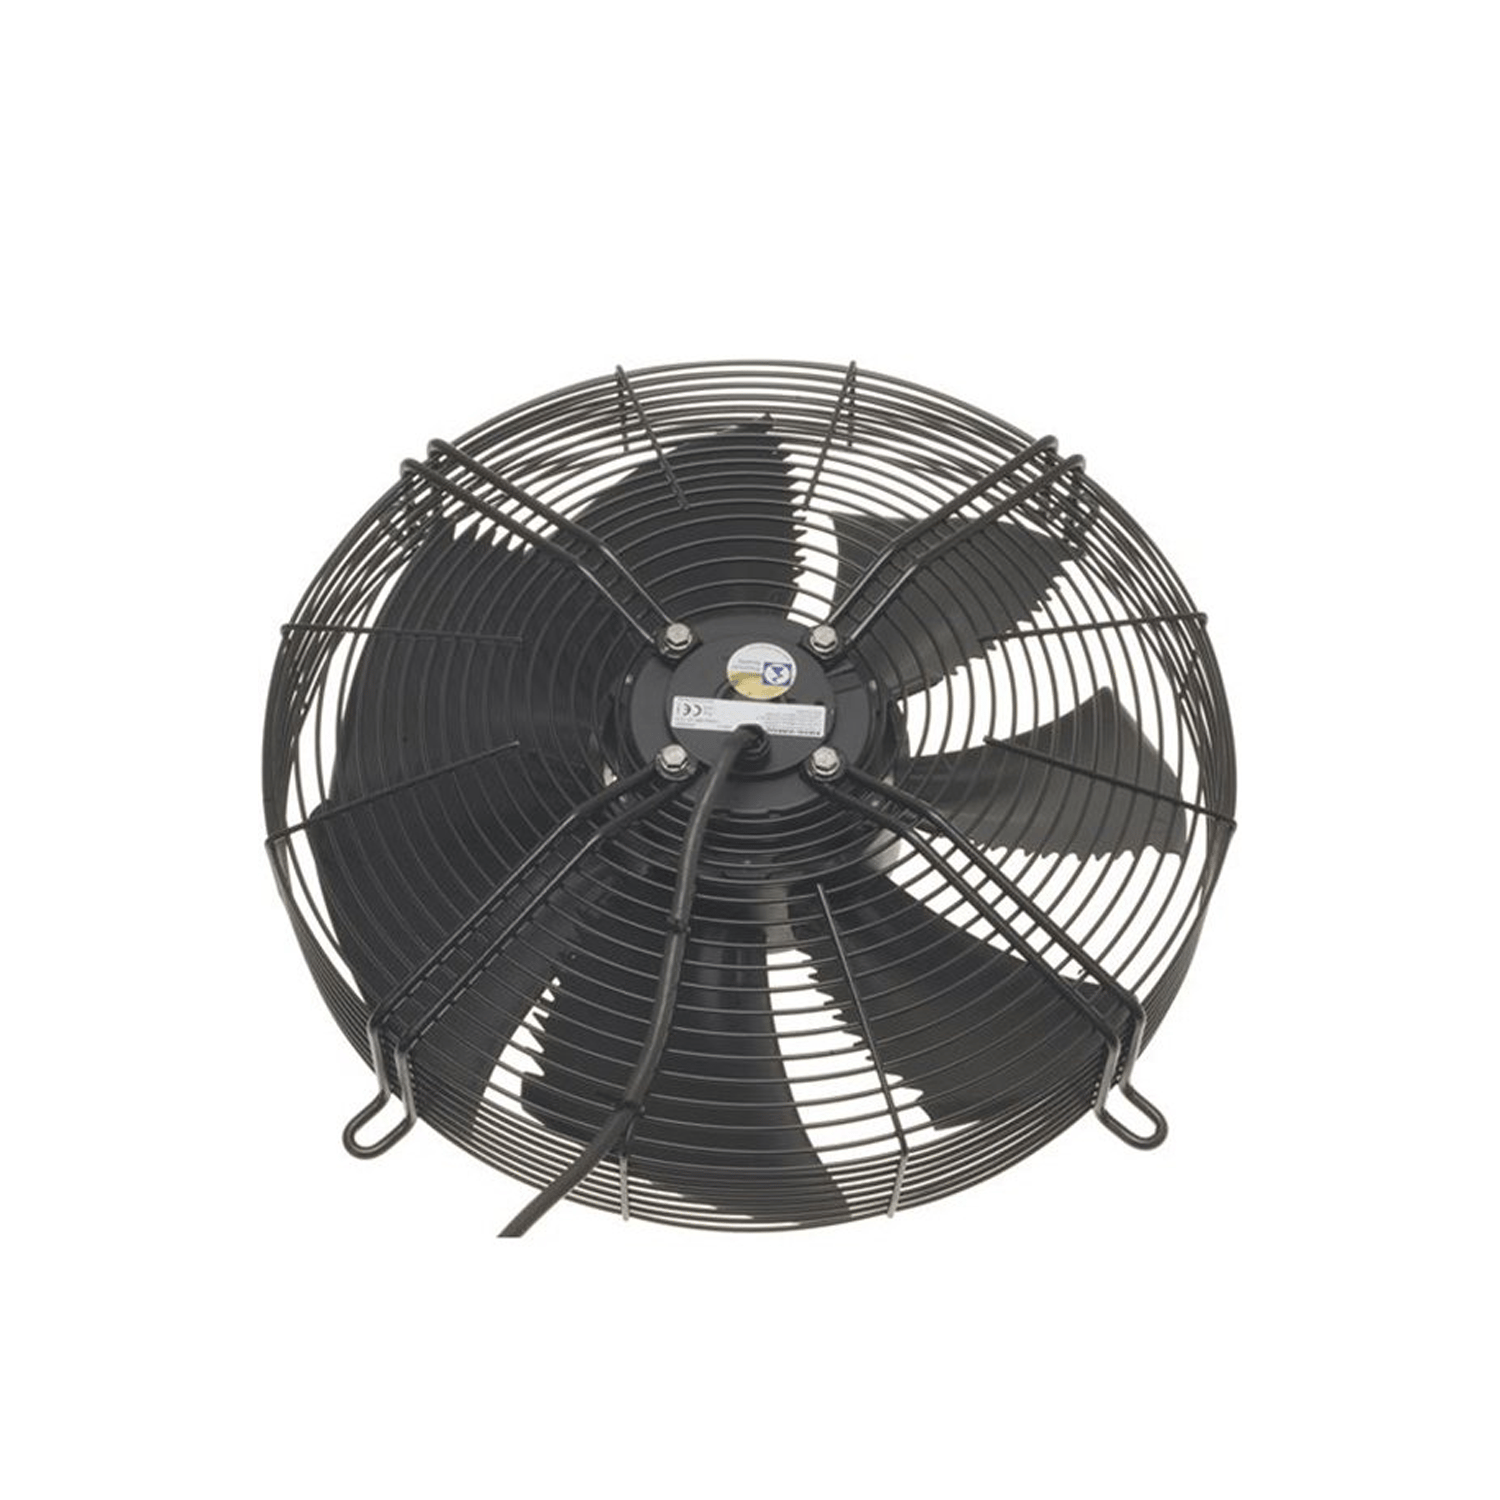 Axiale ventilator, ZIEHL-ABEGG FN045-6W.2F.A7P3, (141703)